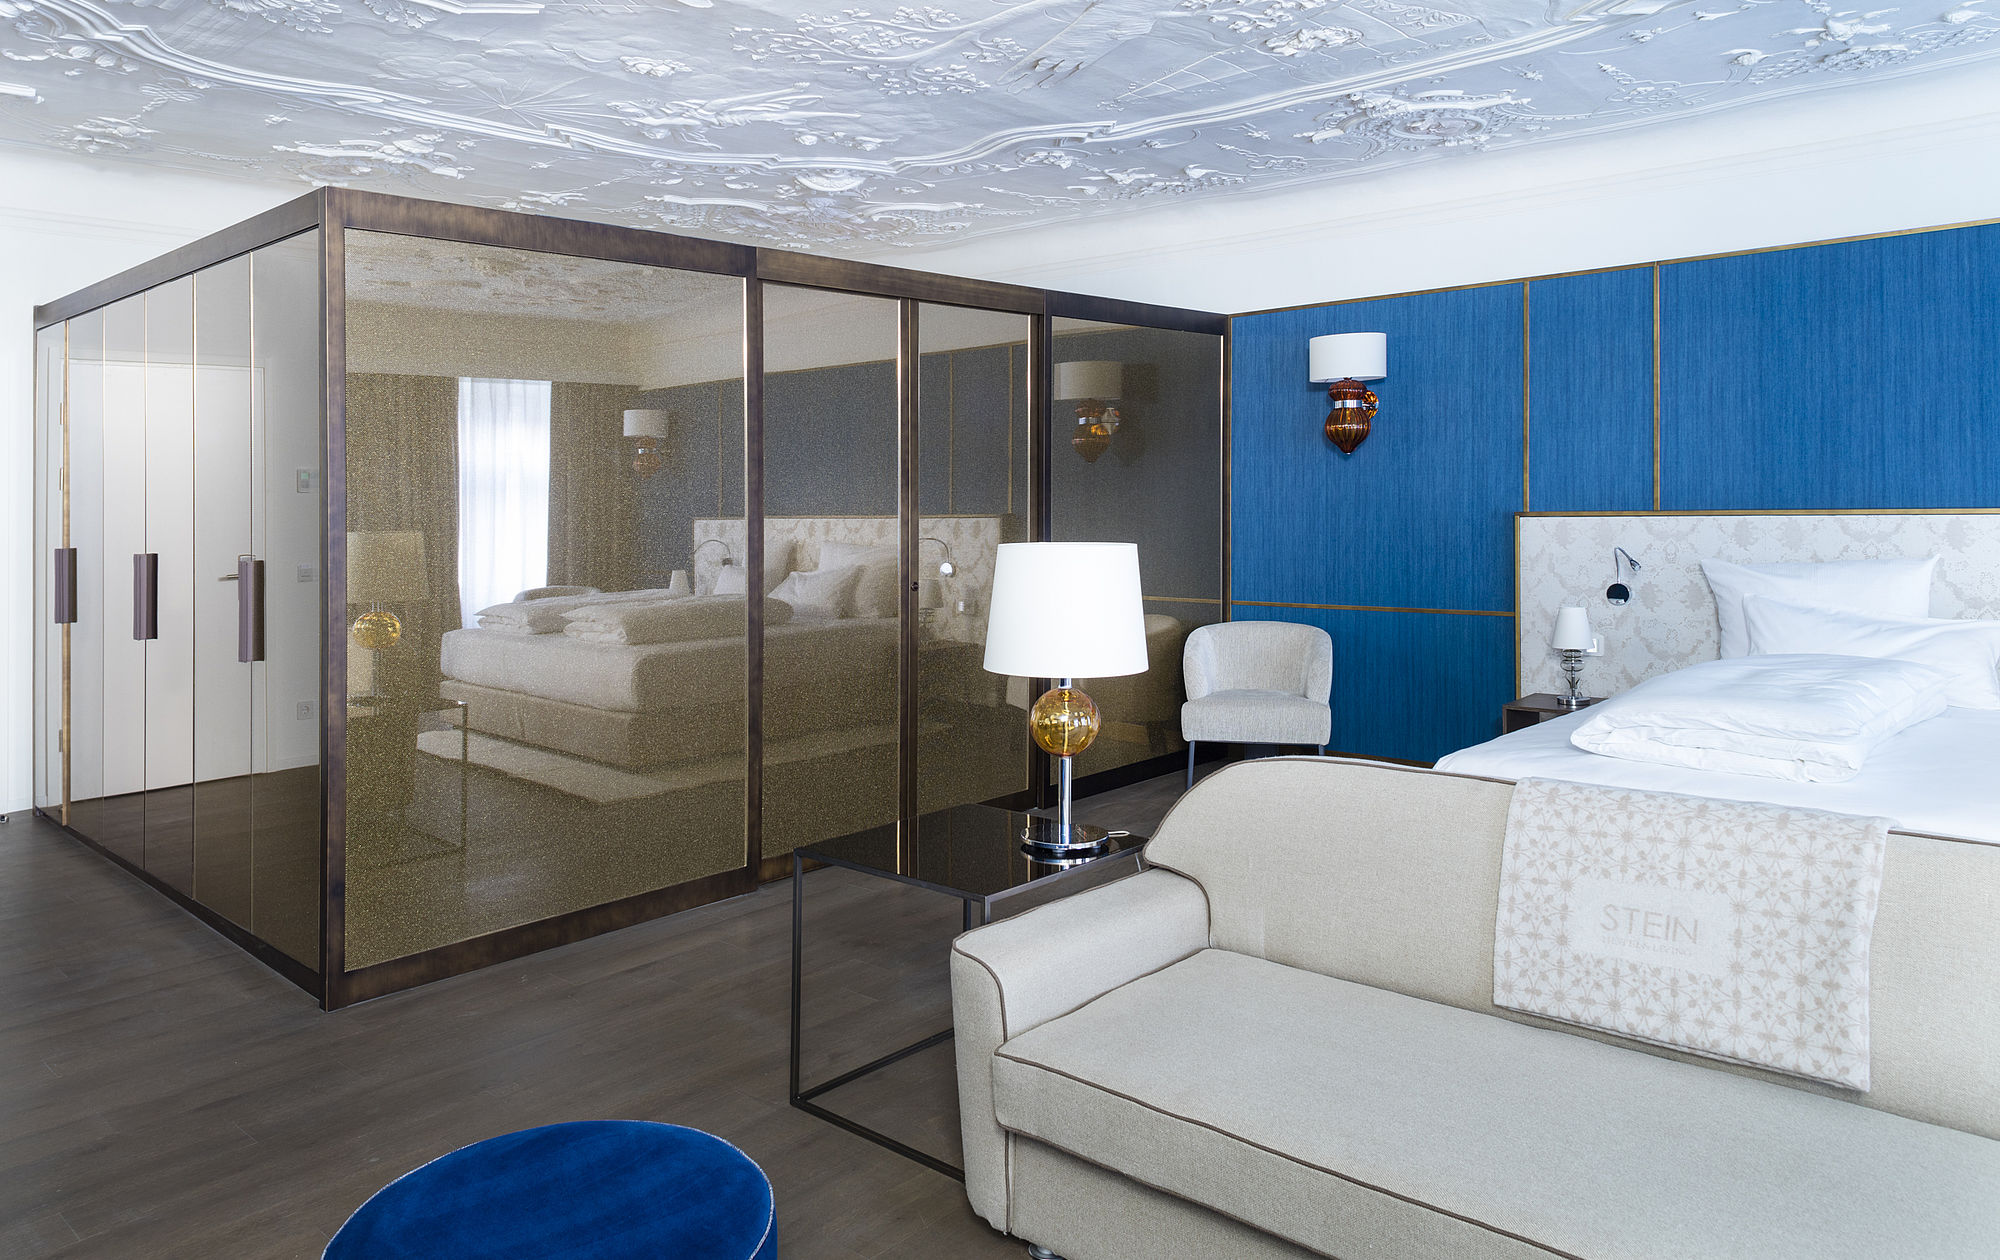 Honeymoon-Suite des Hotel Stein mit Stuckdecke, Kingsize-Bett vor blauer Wand mit goldenen Aktzenten, beigem Sofa und geräumigem Metallschrank mit Spiegelwand